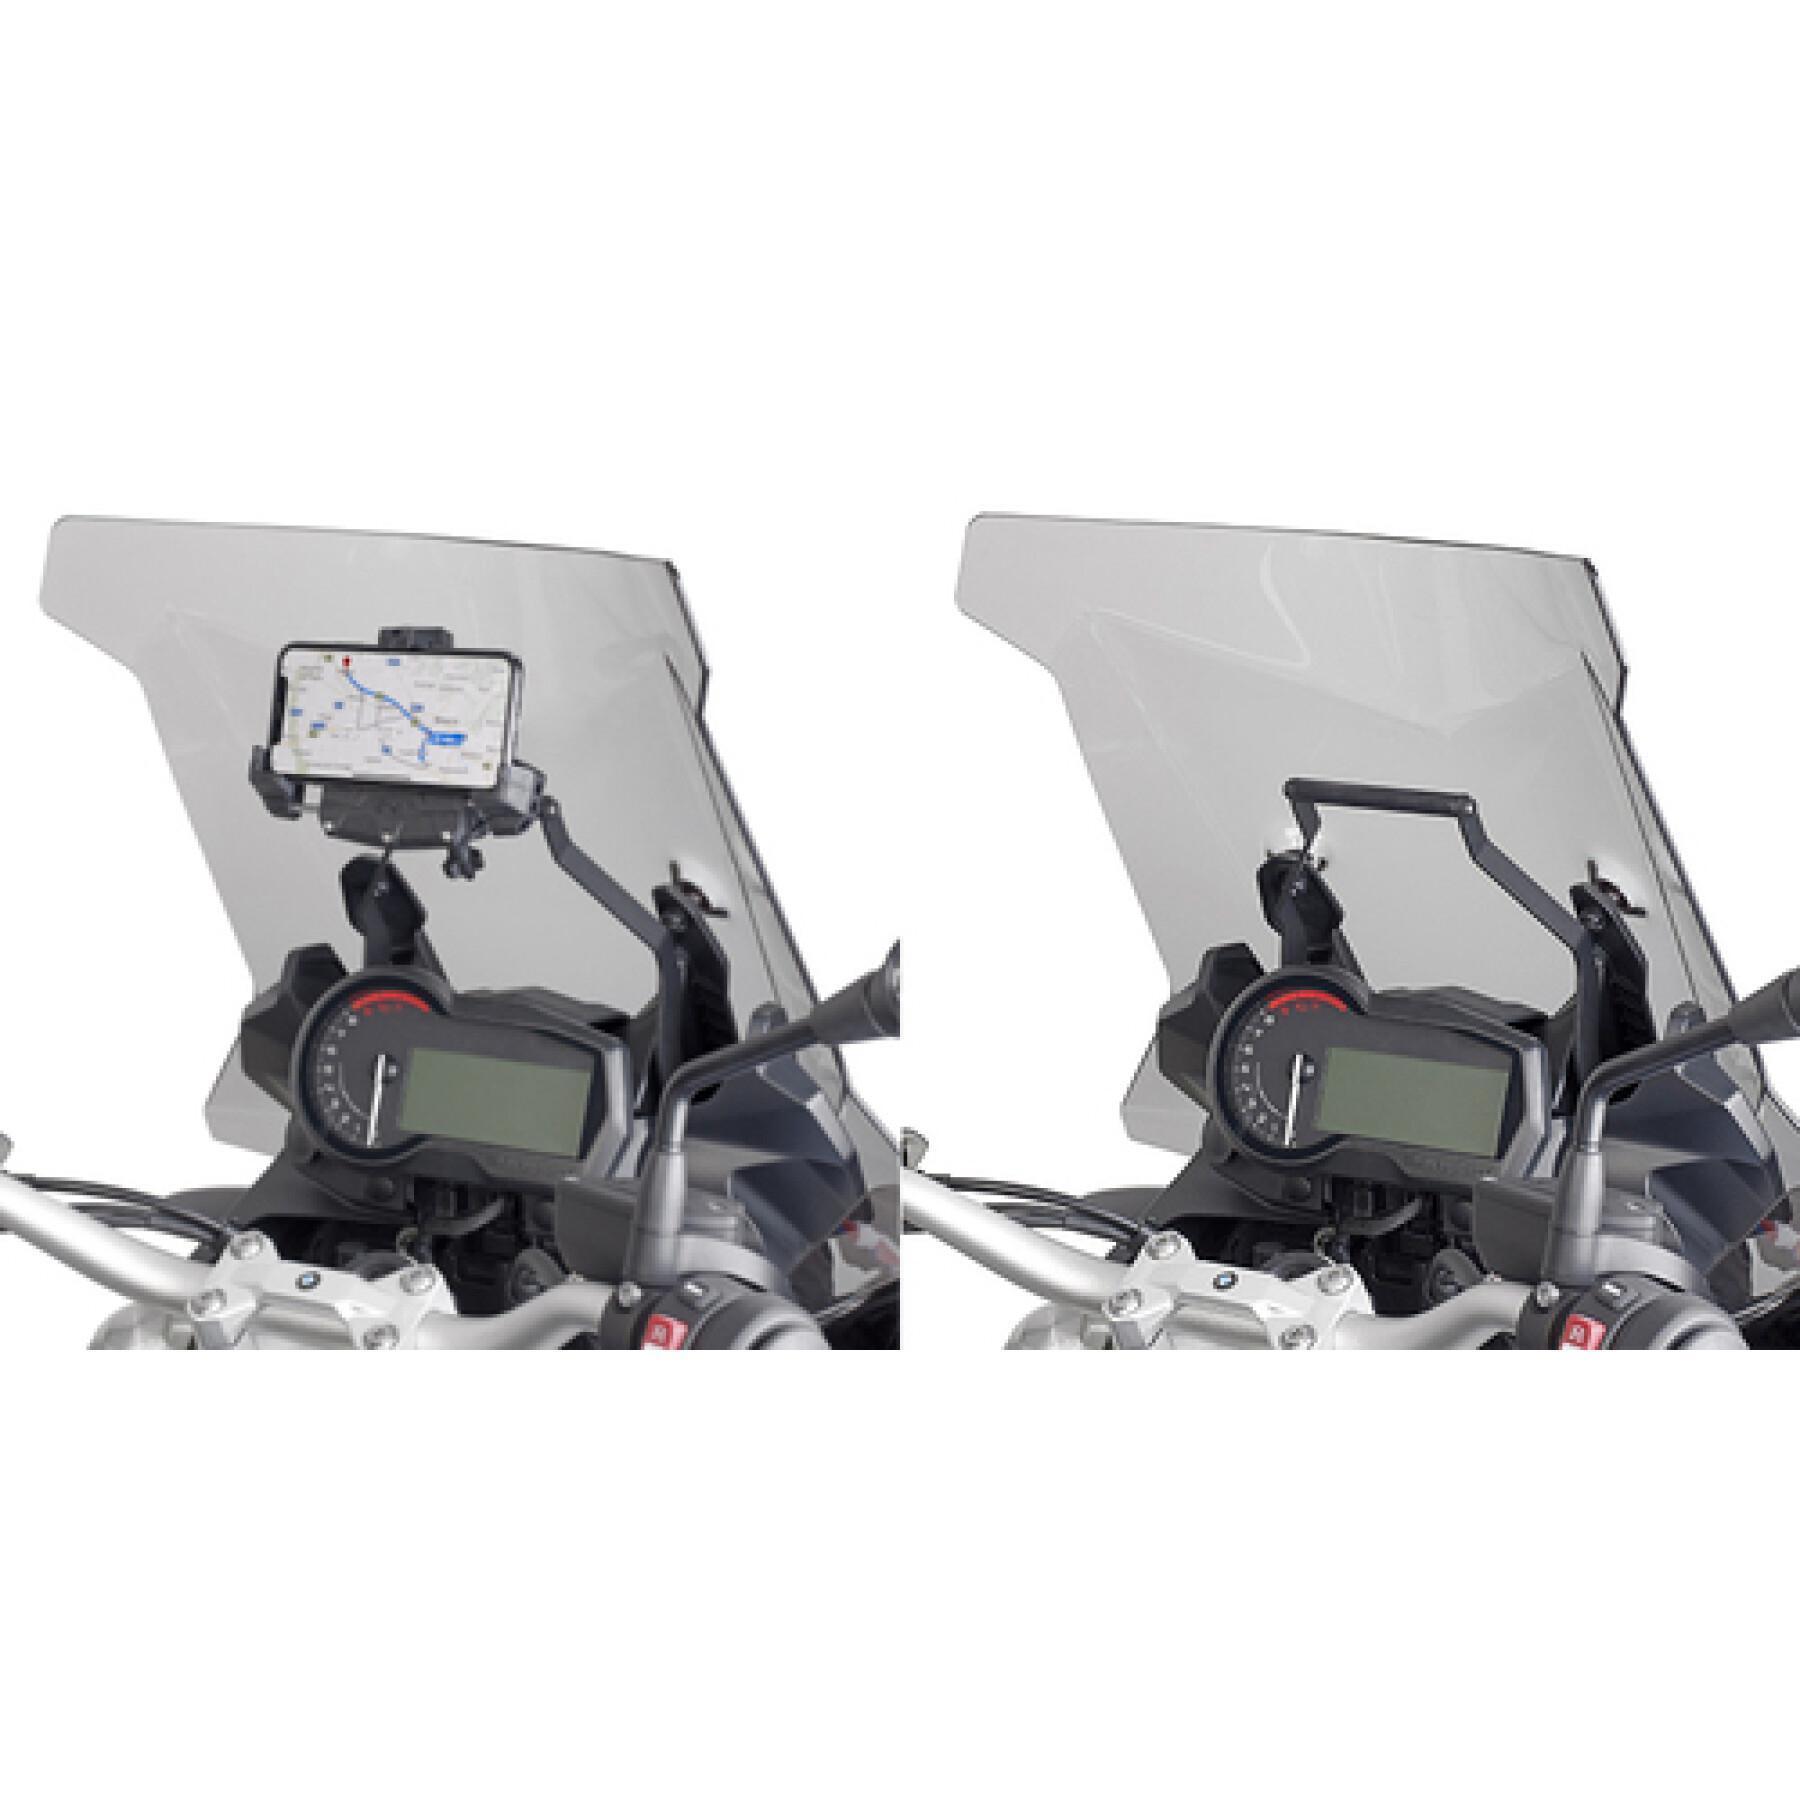 Châssis support GPS Givi Ducati multistr V4 2021